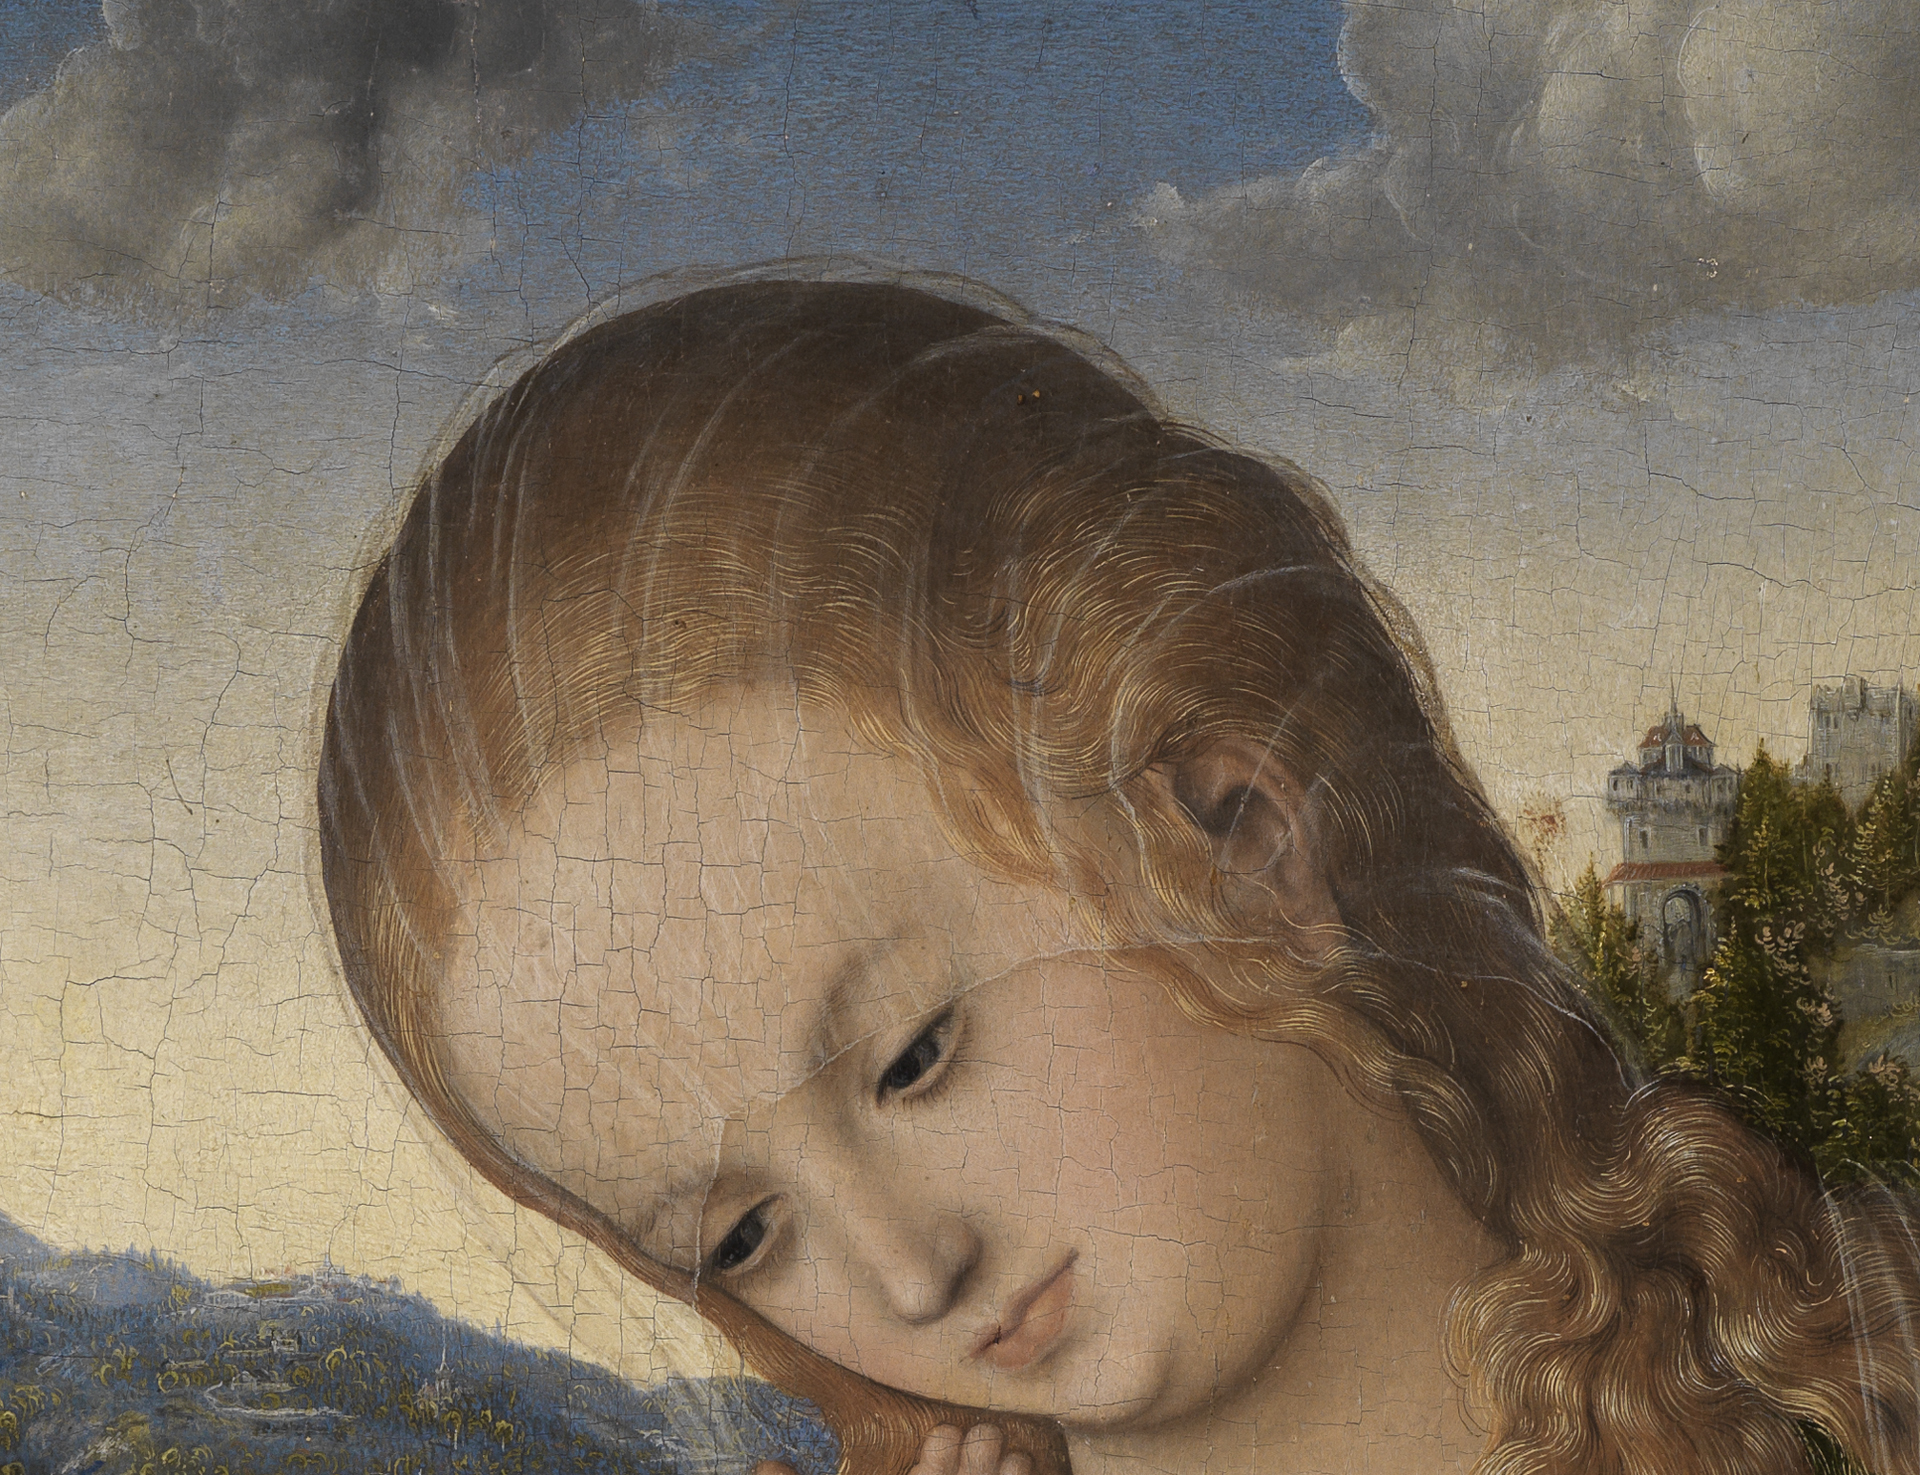 Lucas Cranachs Maria mit Kind. Detail: Kopf Marias mit zartem, durchsichtigem Schleier vor Sonnenaufgang.